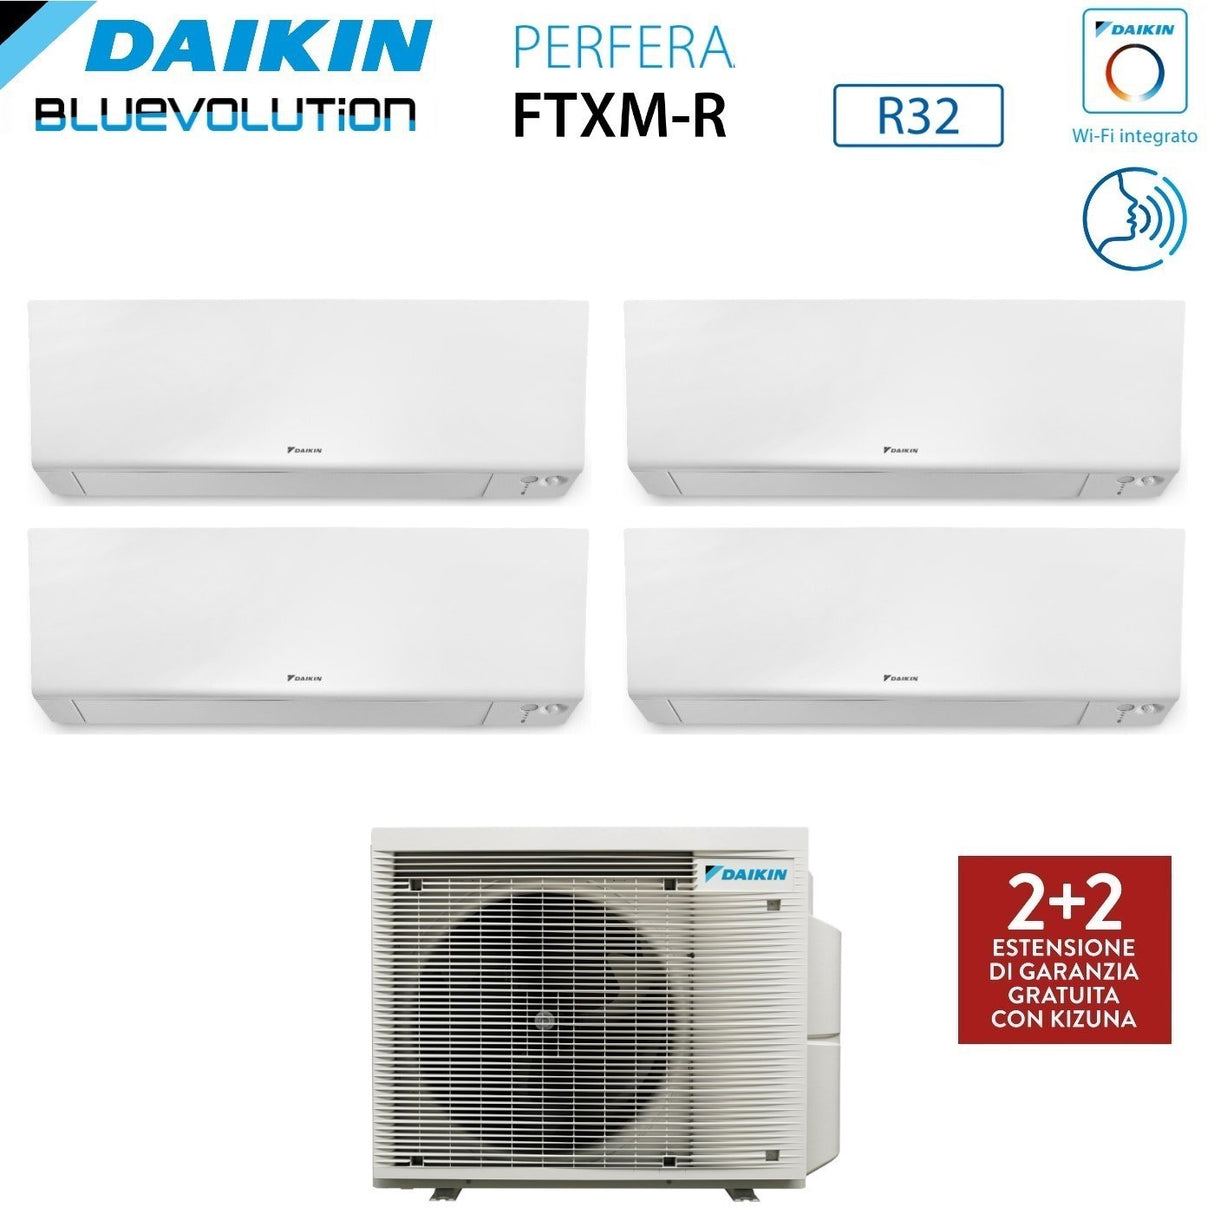 immagine-2-daikin-climatizzatore-condizionatore-daikin-bluevolution-quadri-split-inverter-serie-ftxmr-perfera-wall-9121212-con-4mxm80a-r-32-wi-fi-integrato-9000120001200012000-garanzia-italiana